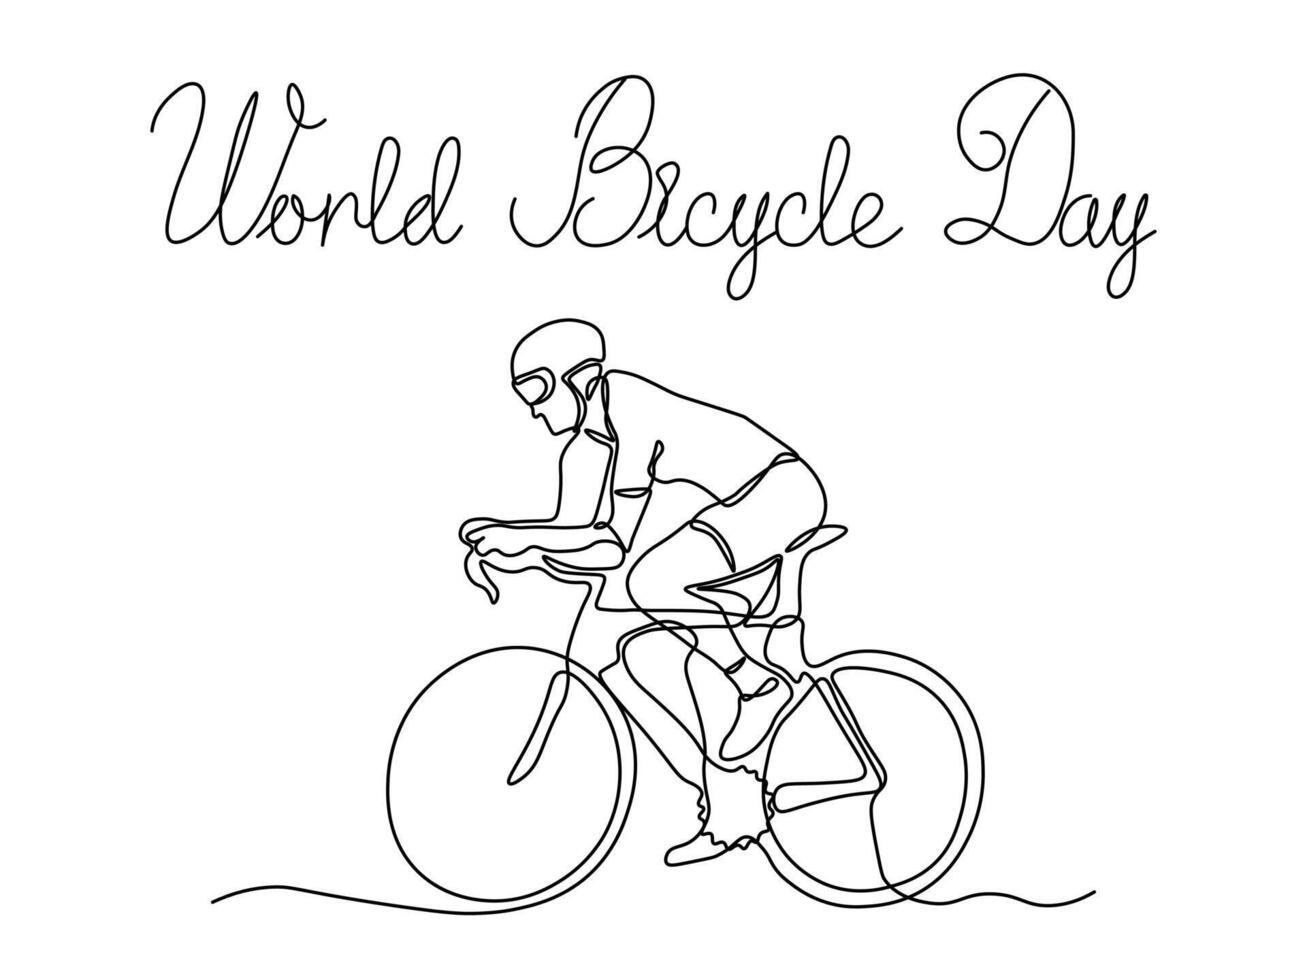 värld cykel dag. abstrakt cyklist, idrottare på en cykel, kontinuerlig ett linje konst hand teckning skiss vektor